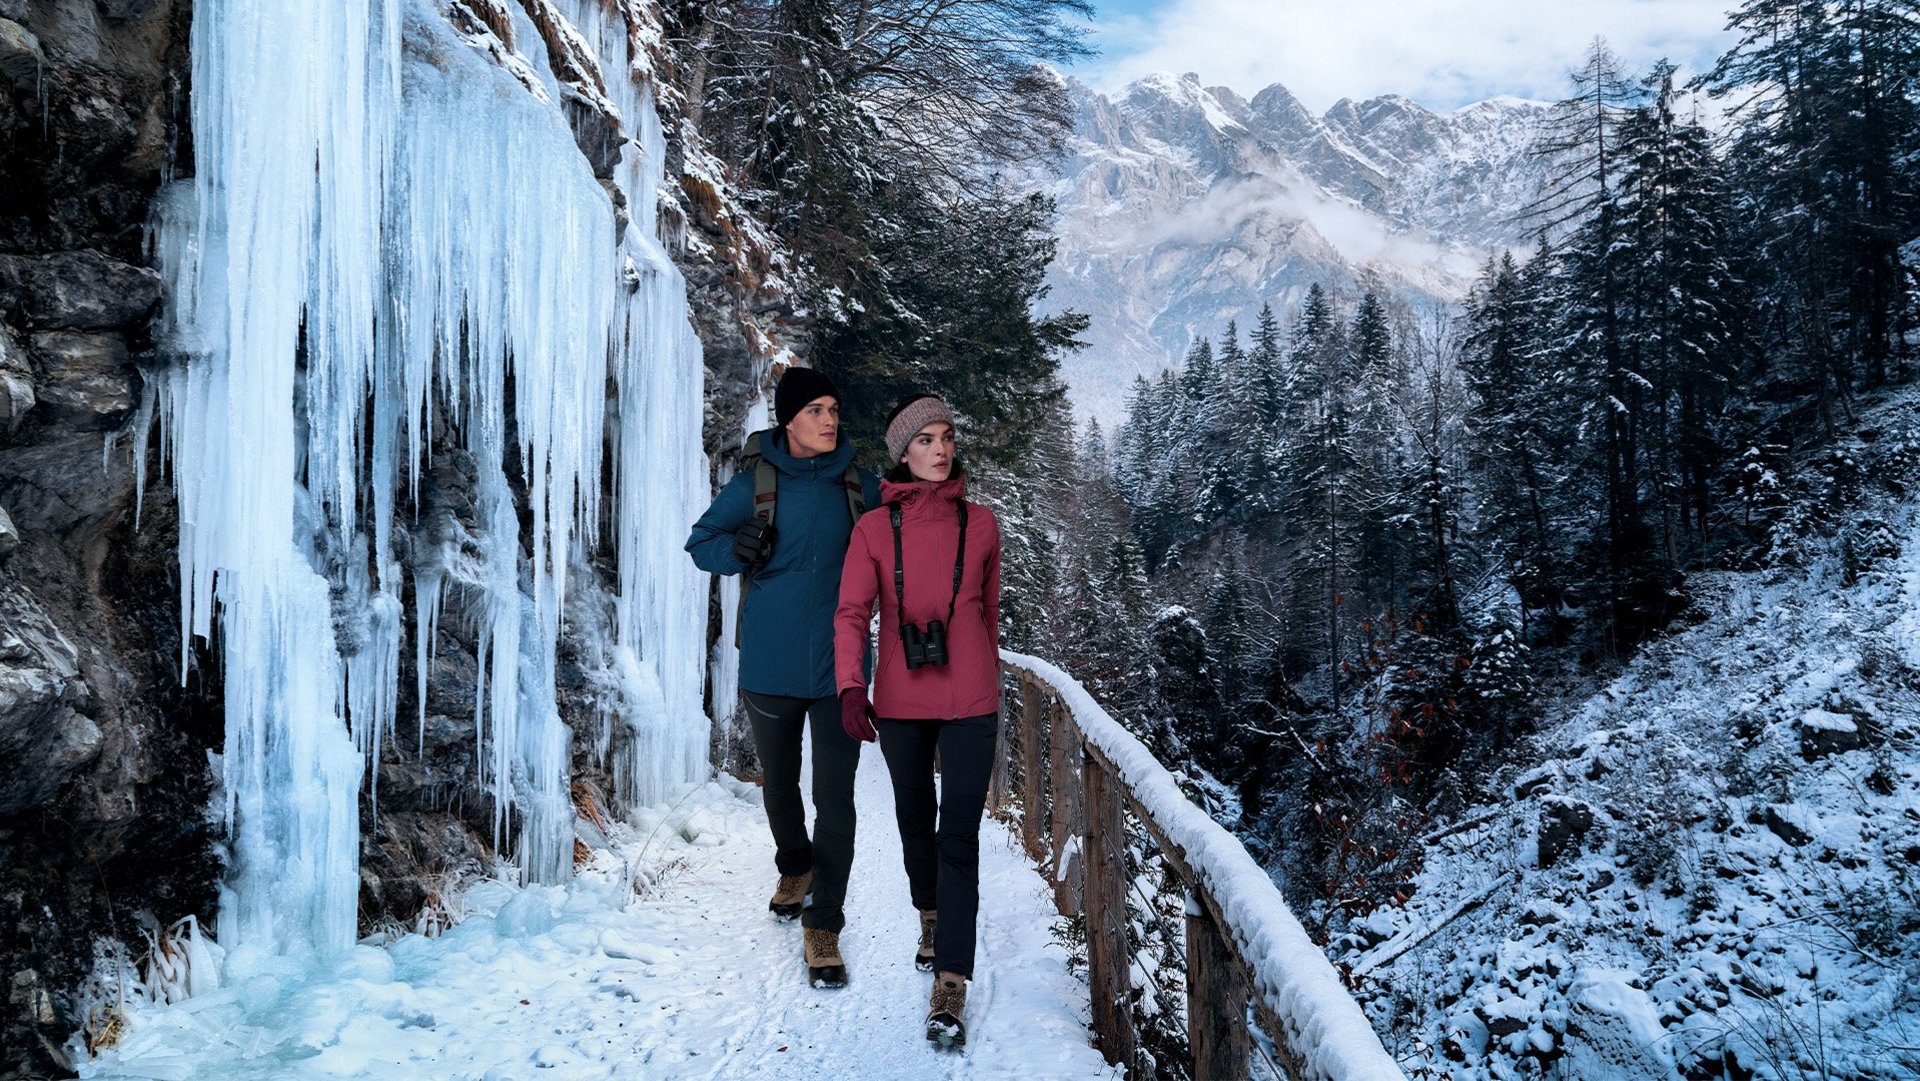 Das Foto zeigt zwei Personen bei einer Winterwanderung mit dem Fernglas.